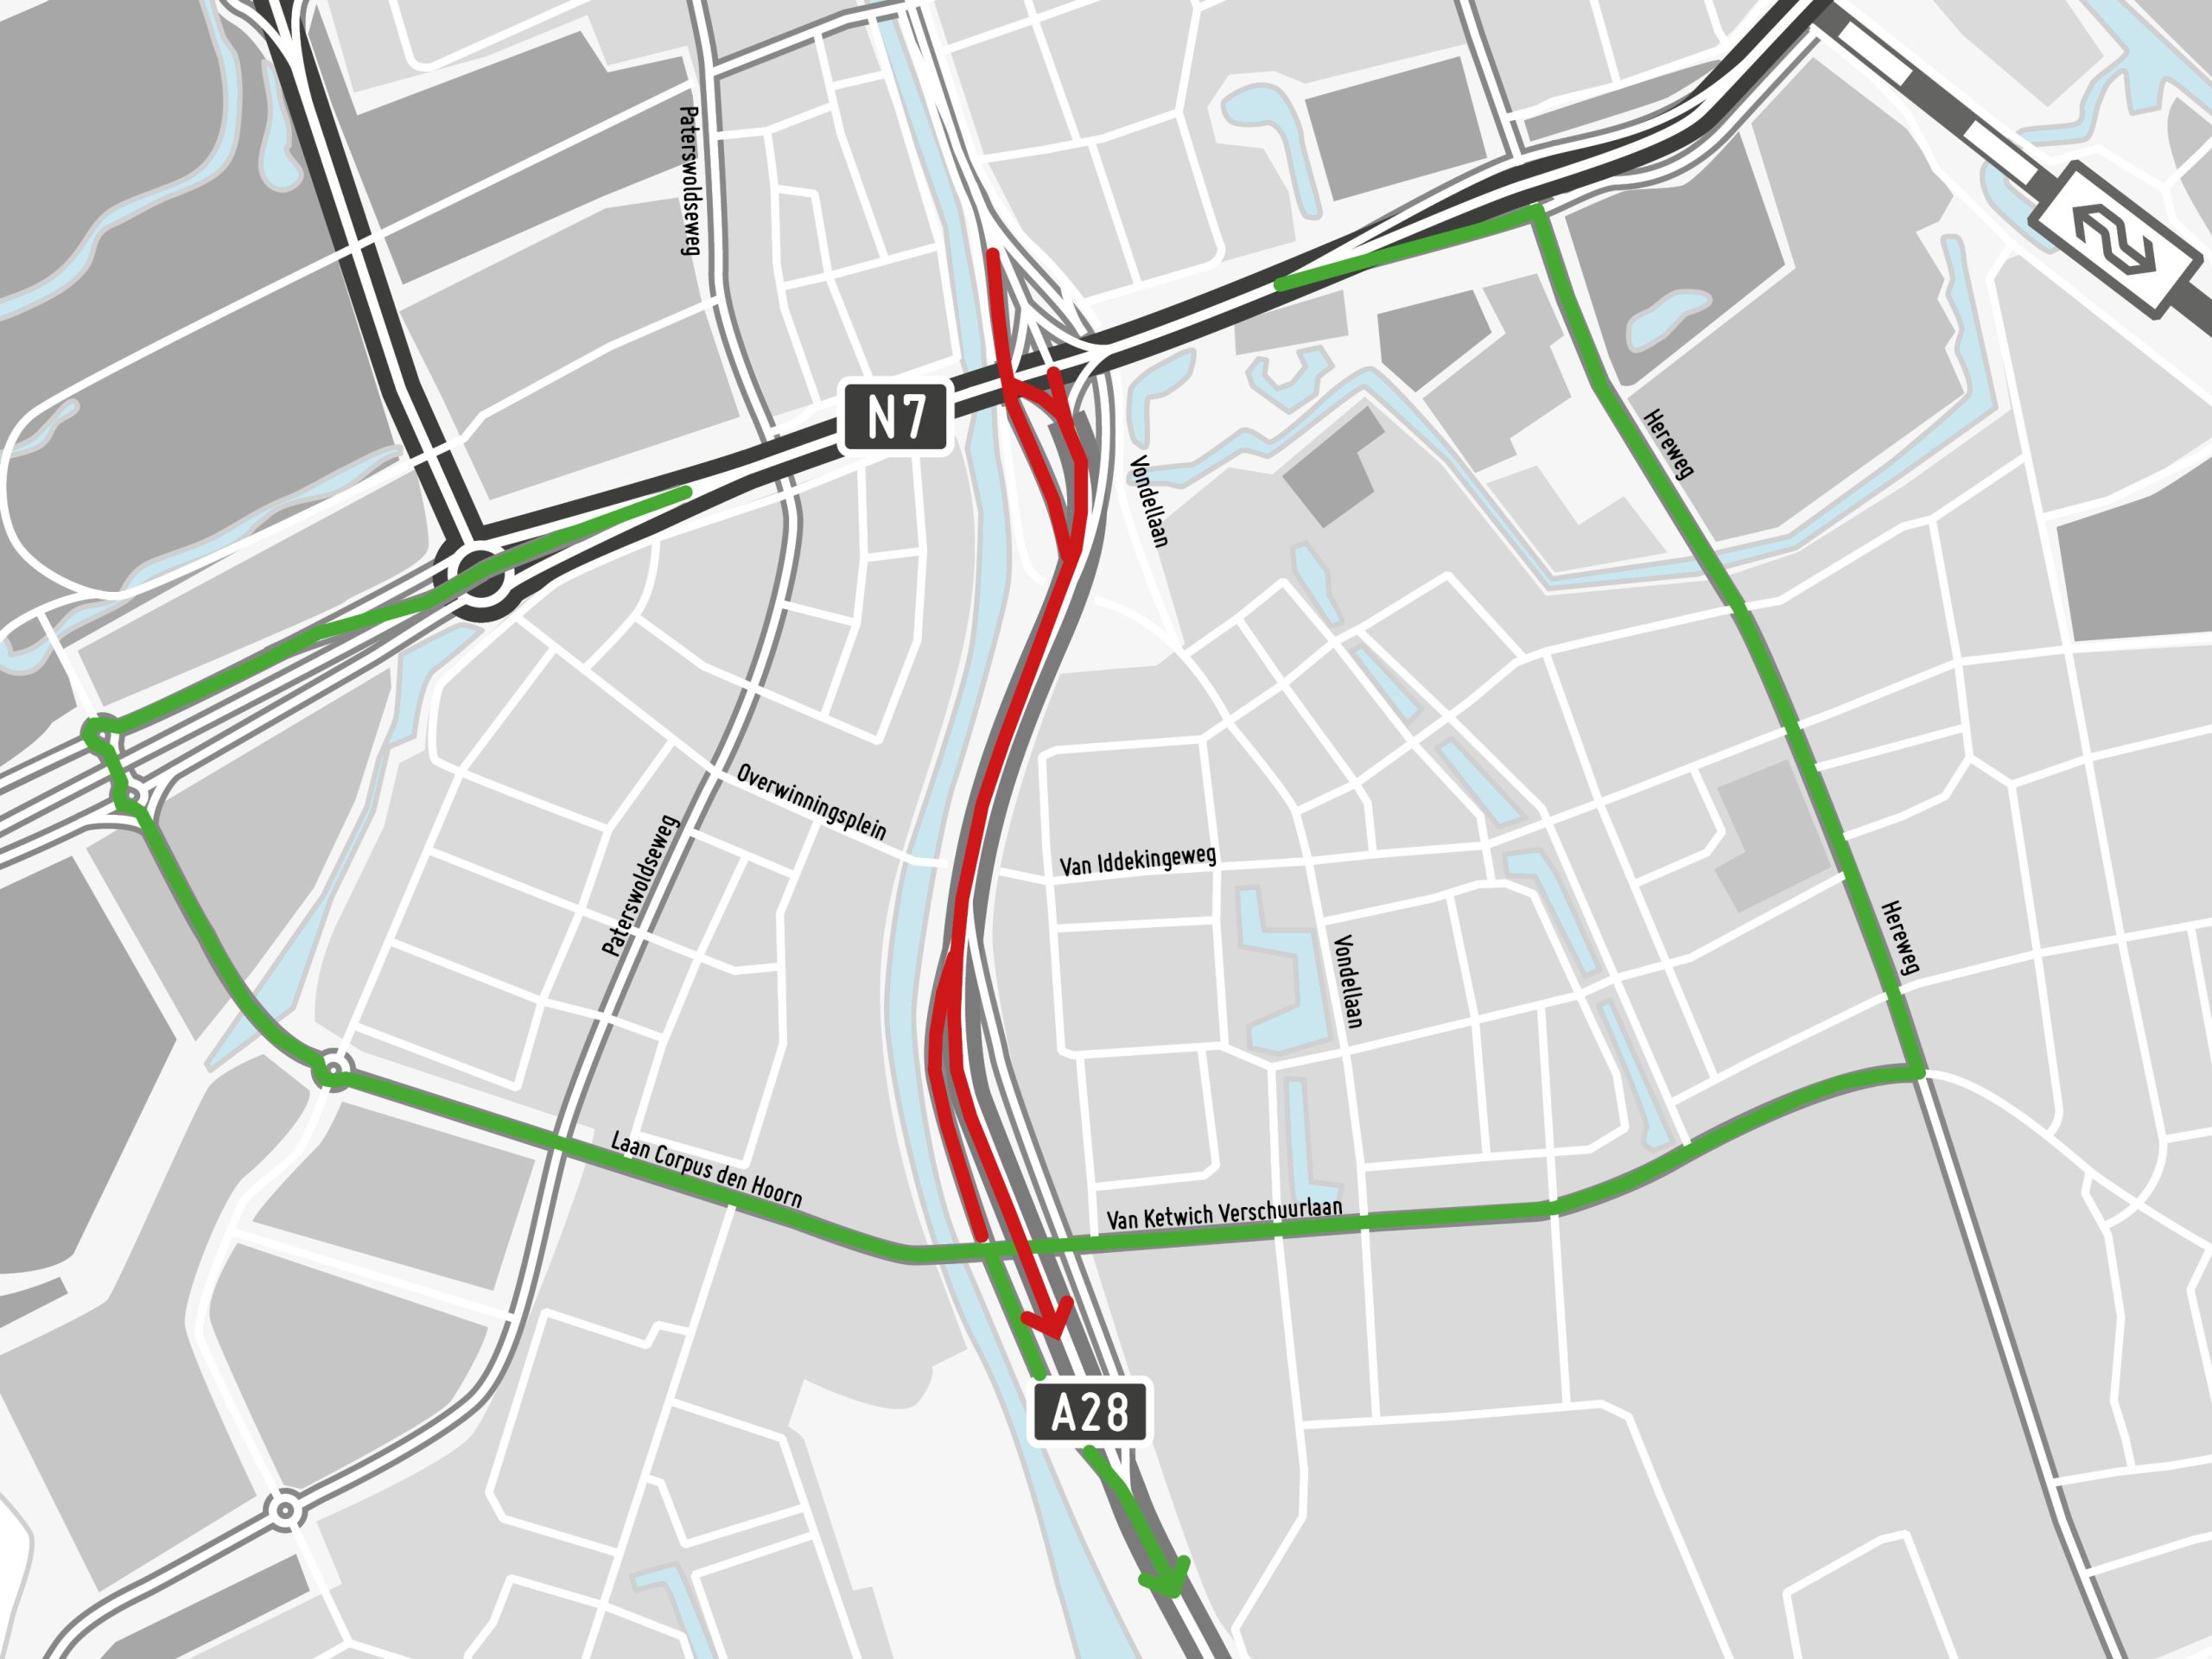 Omleidingsroutes voor verkeer tussen Groningen en Haren. In rood de afsluiting, in groen de omleidingsroutes.